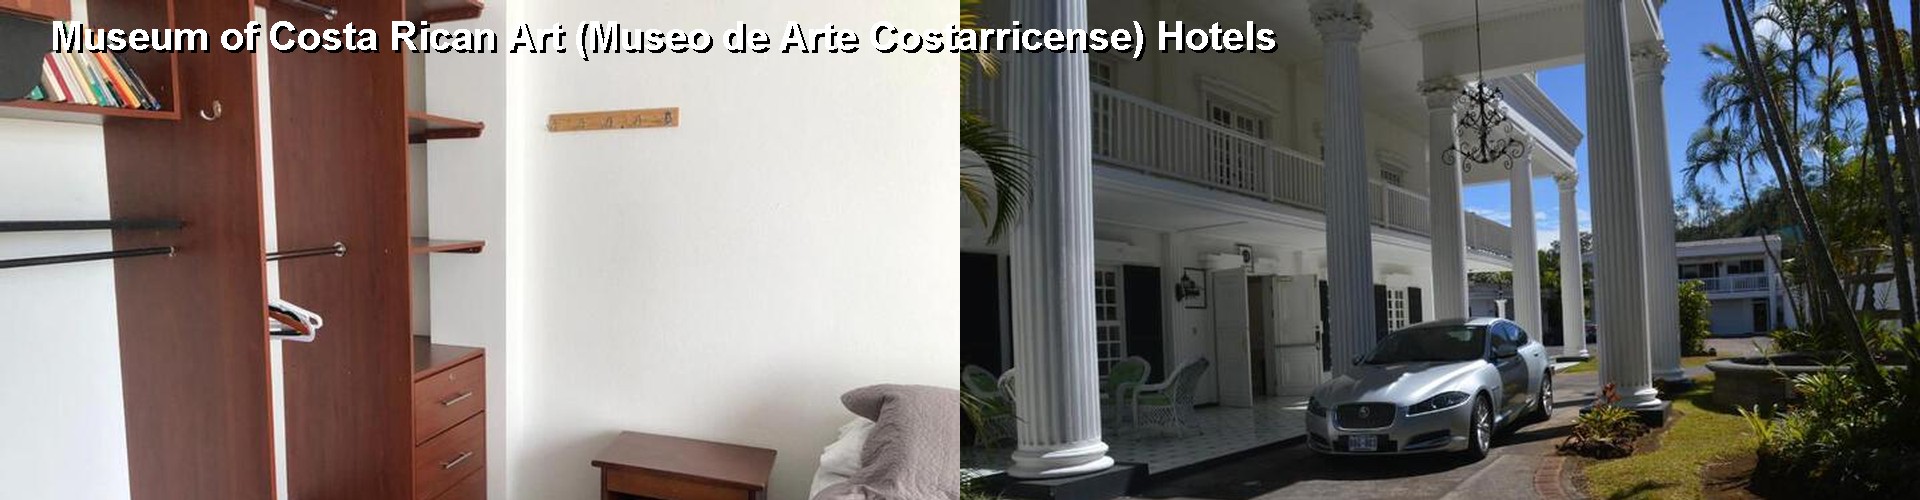 5 Best Hotels near Museum of Costa Rican Art (Museo de Arte Costarricense)